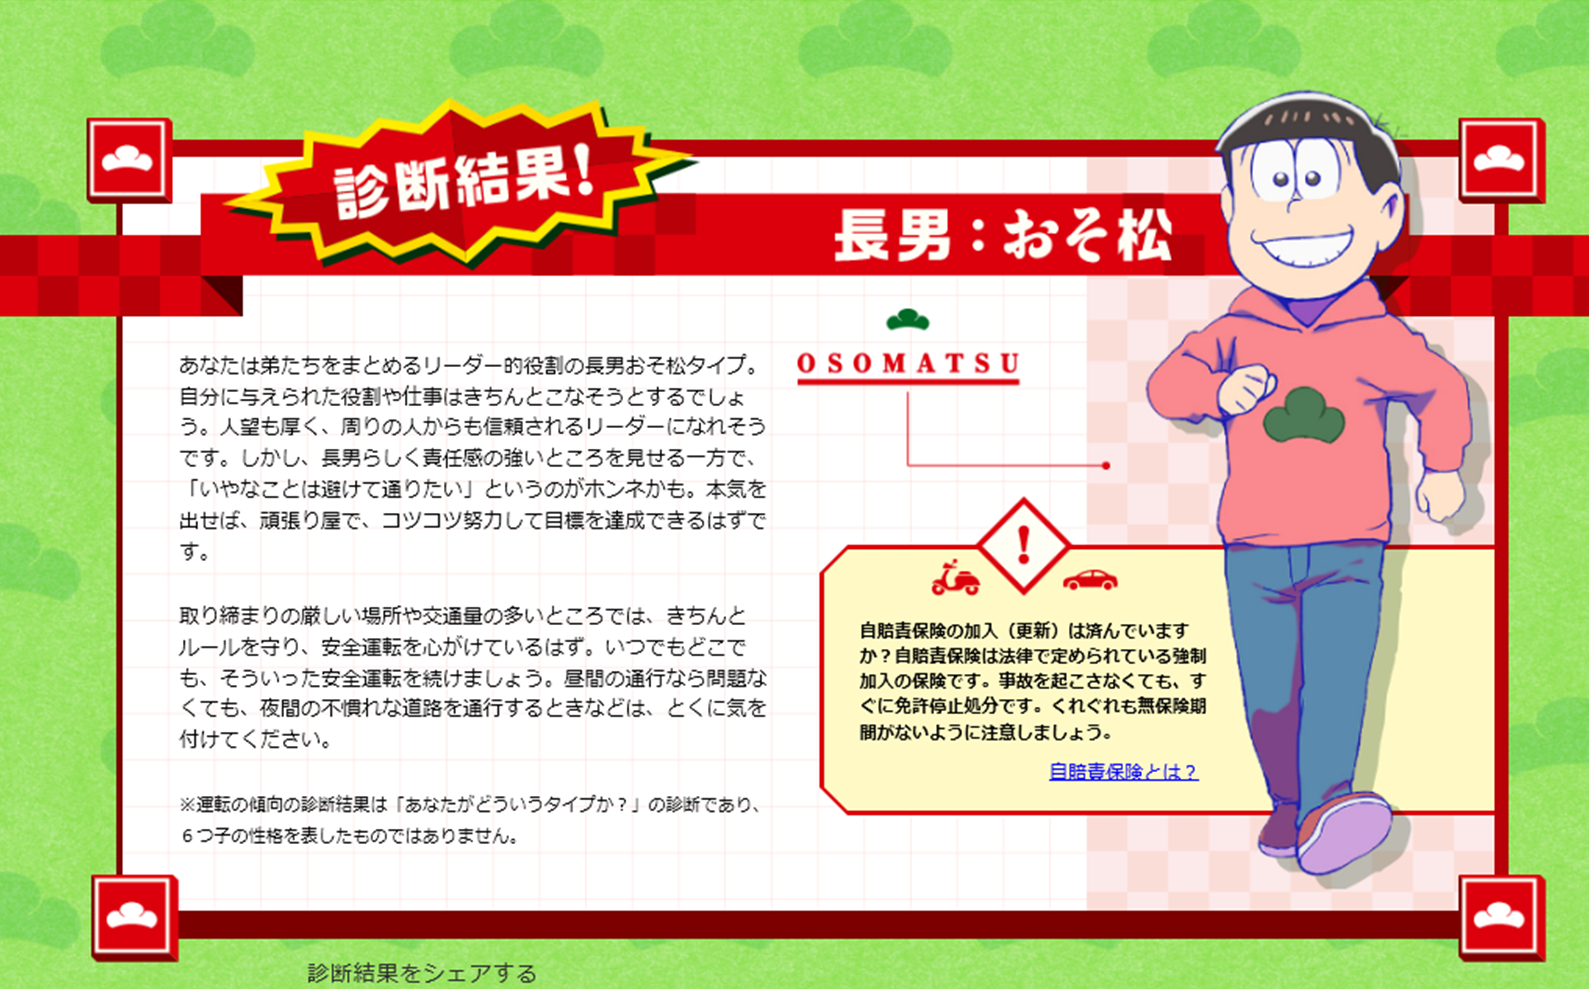 公式 自賠責広報キャラクターに おそ松さん ｈｏｎｄａ ｃａｒｓ 石川西